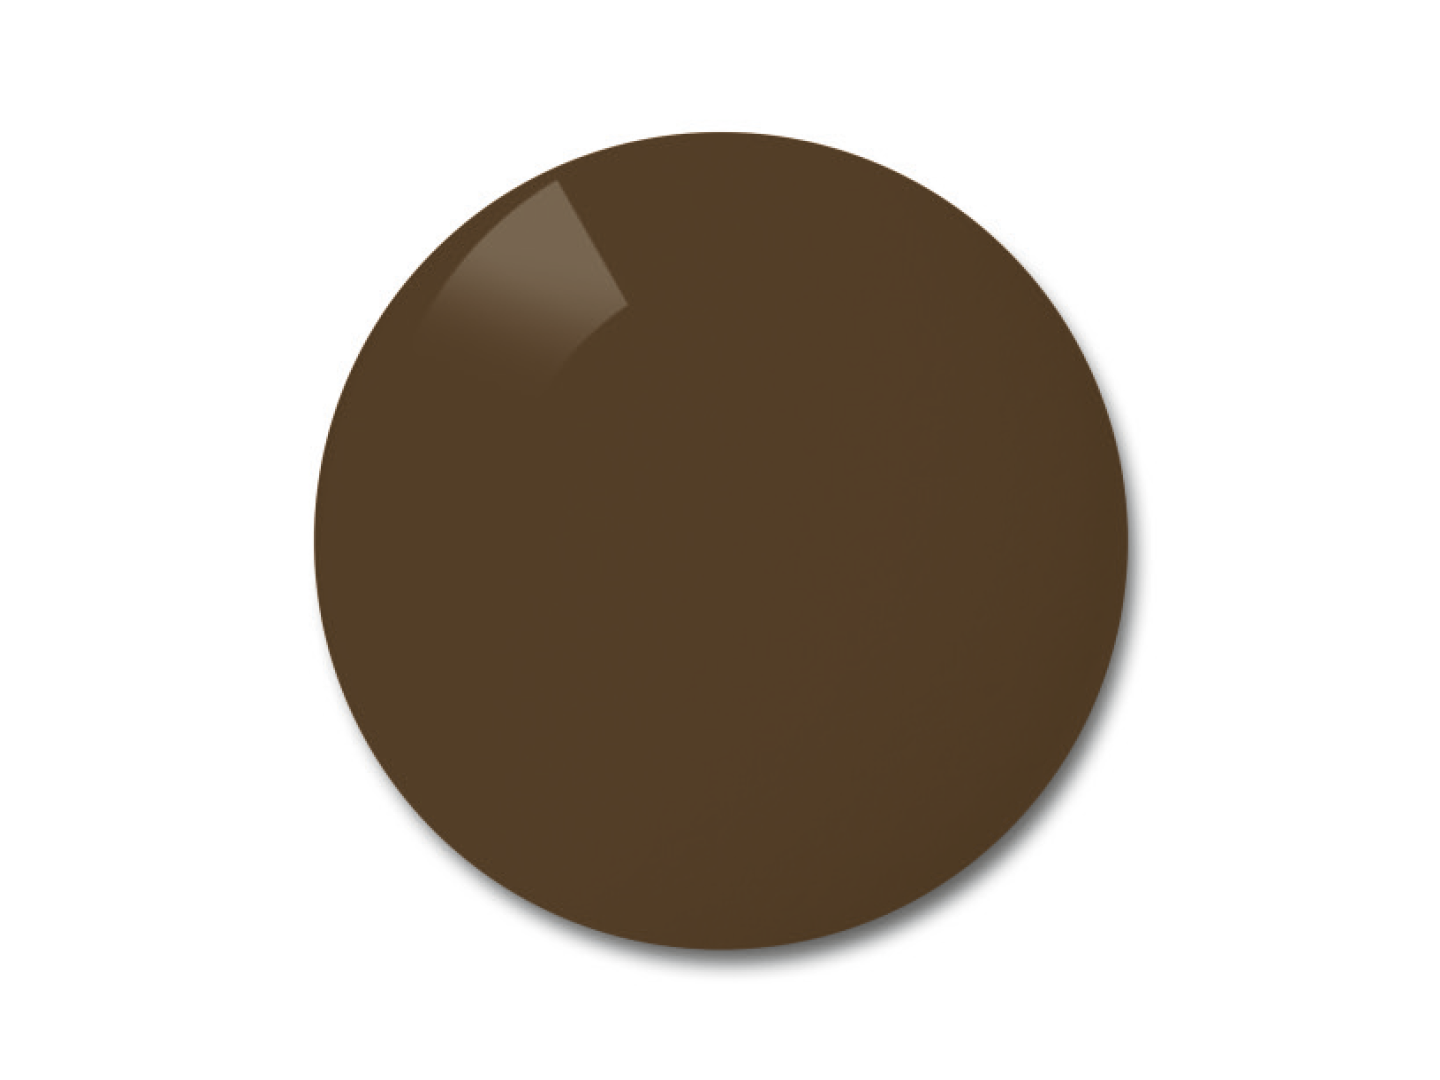 Obraz soczewek ZEISS z polaryzacją w opcji kolorystycznej brązowej